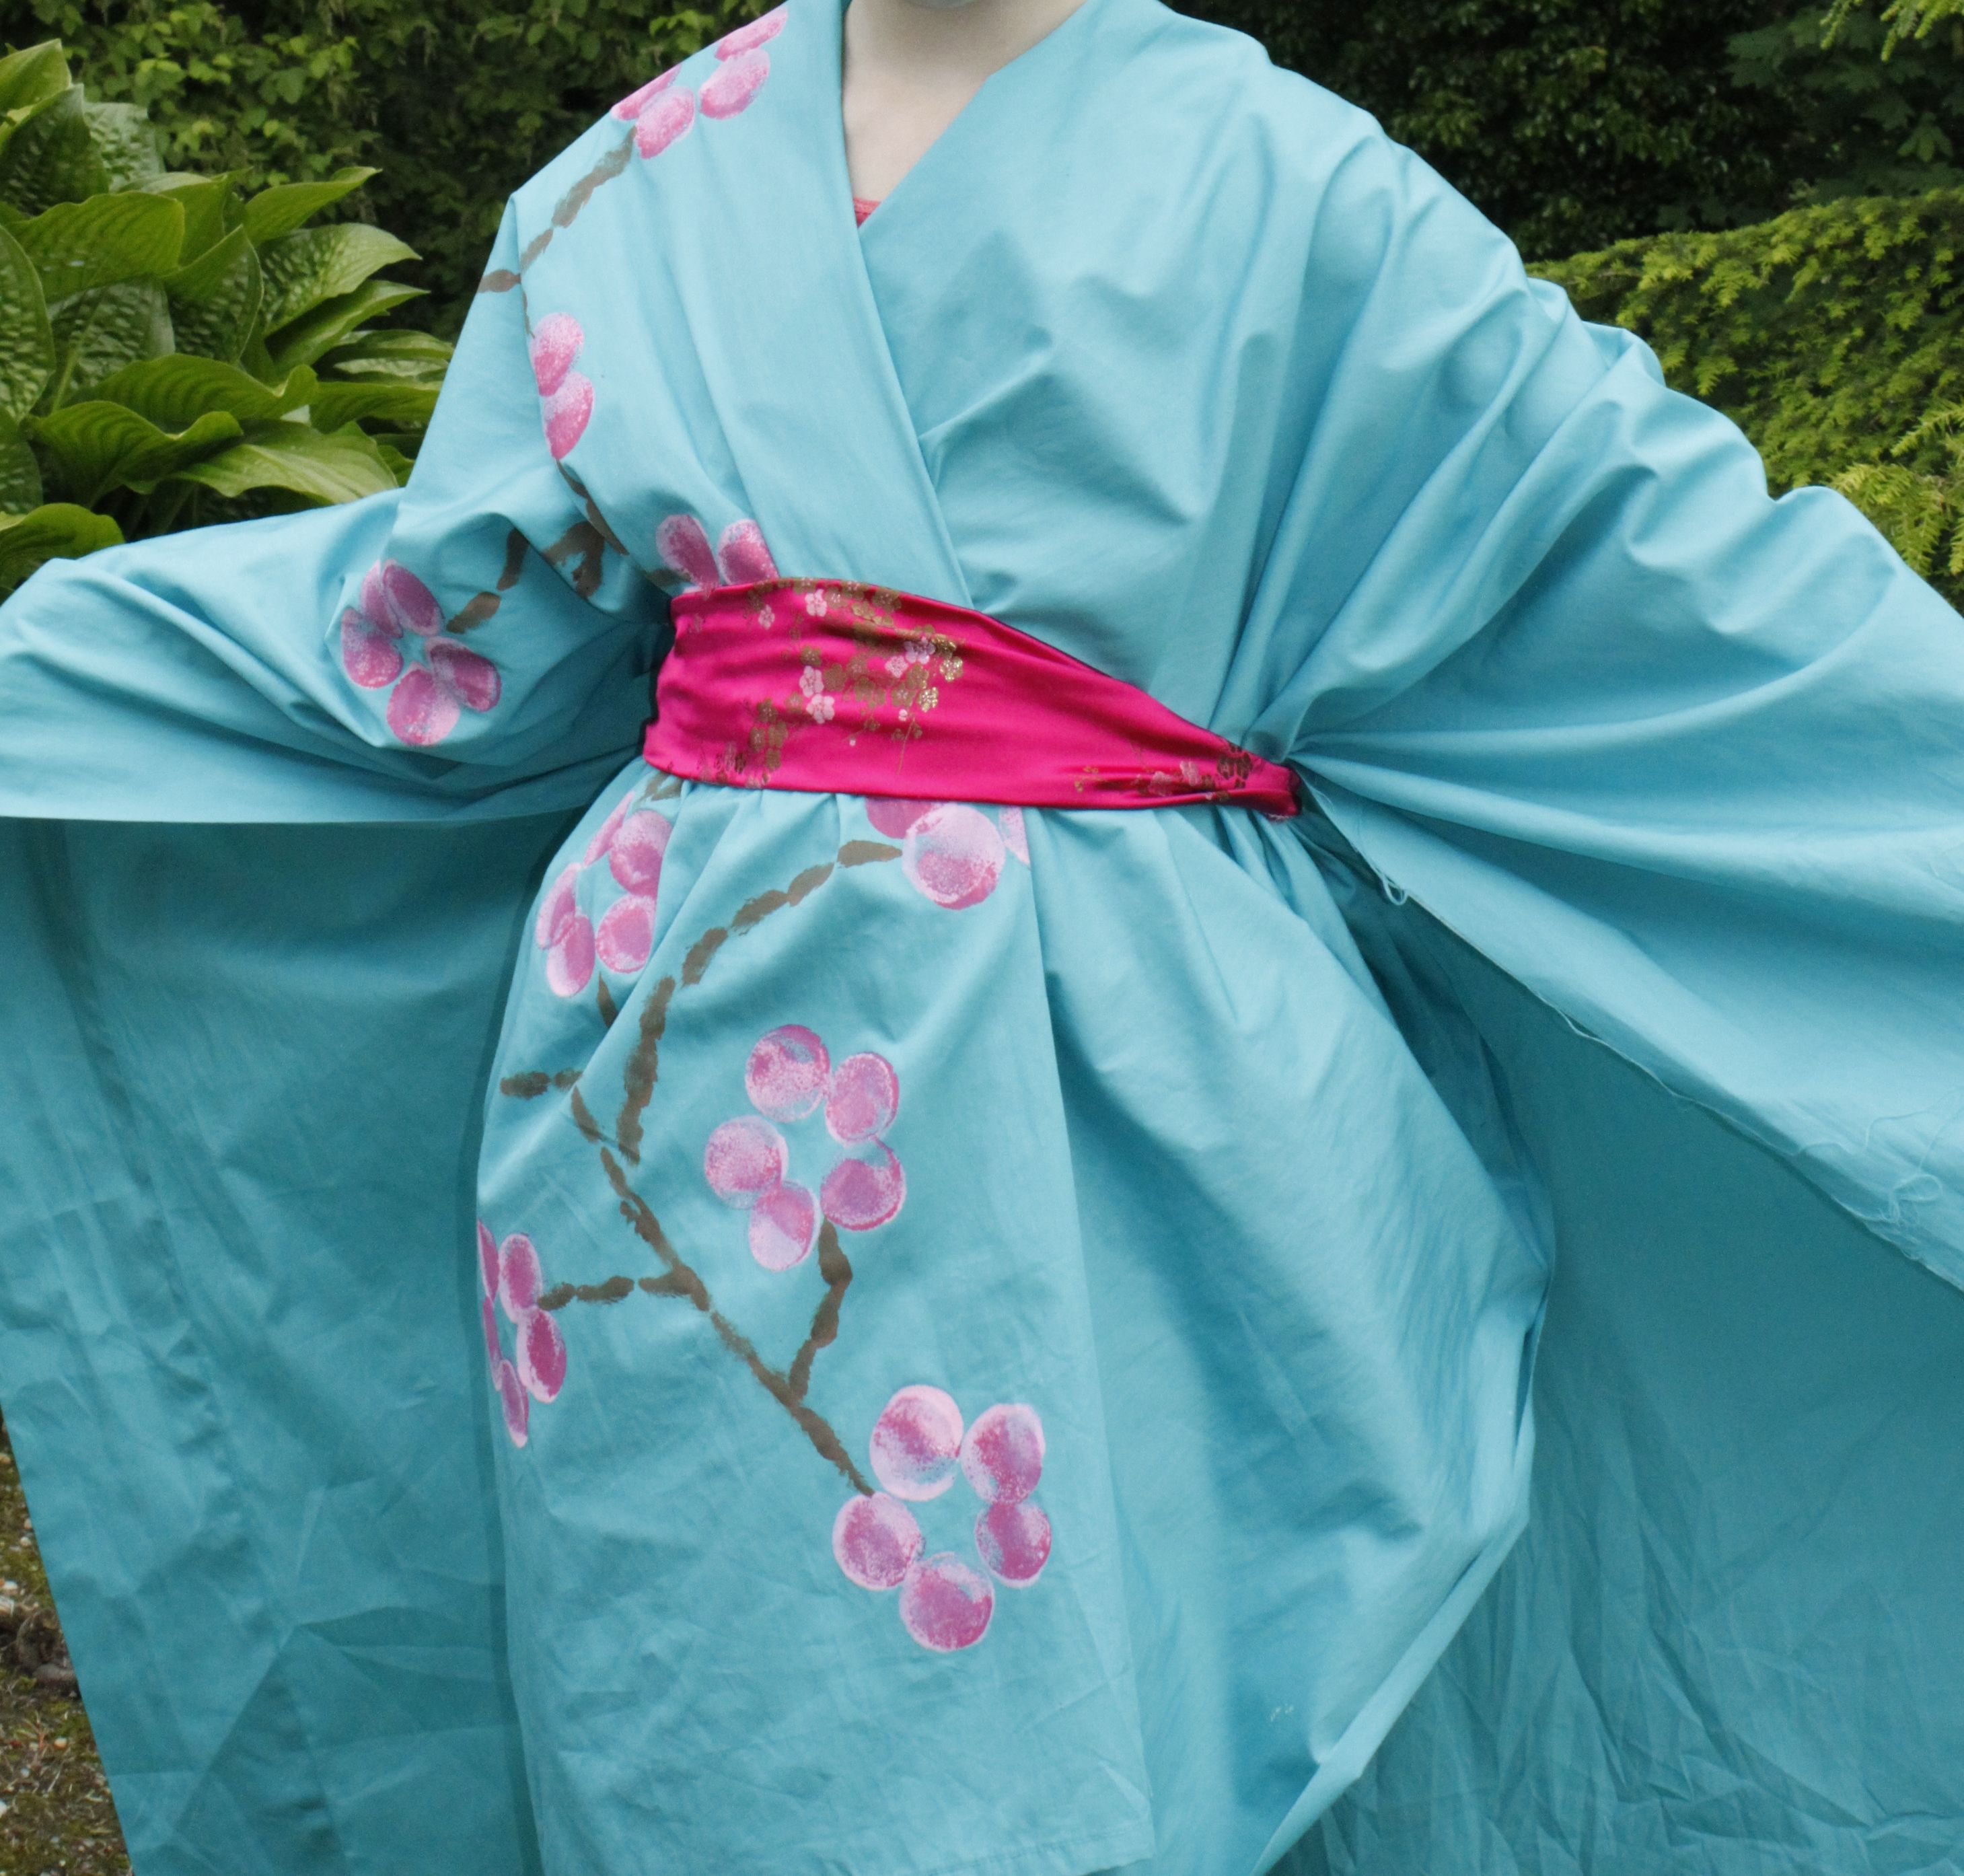 Японская национальная одежда: история, особенности, современная мода